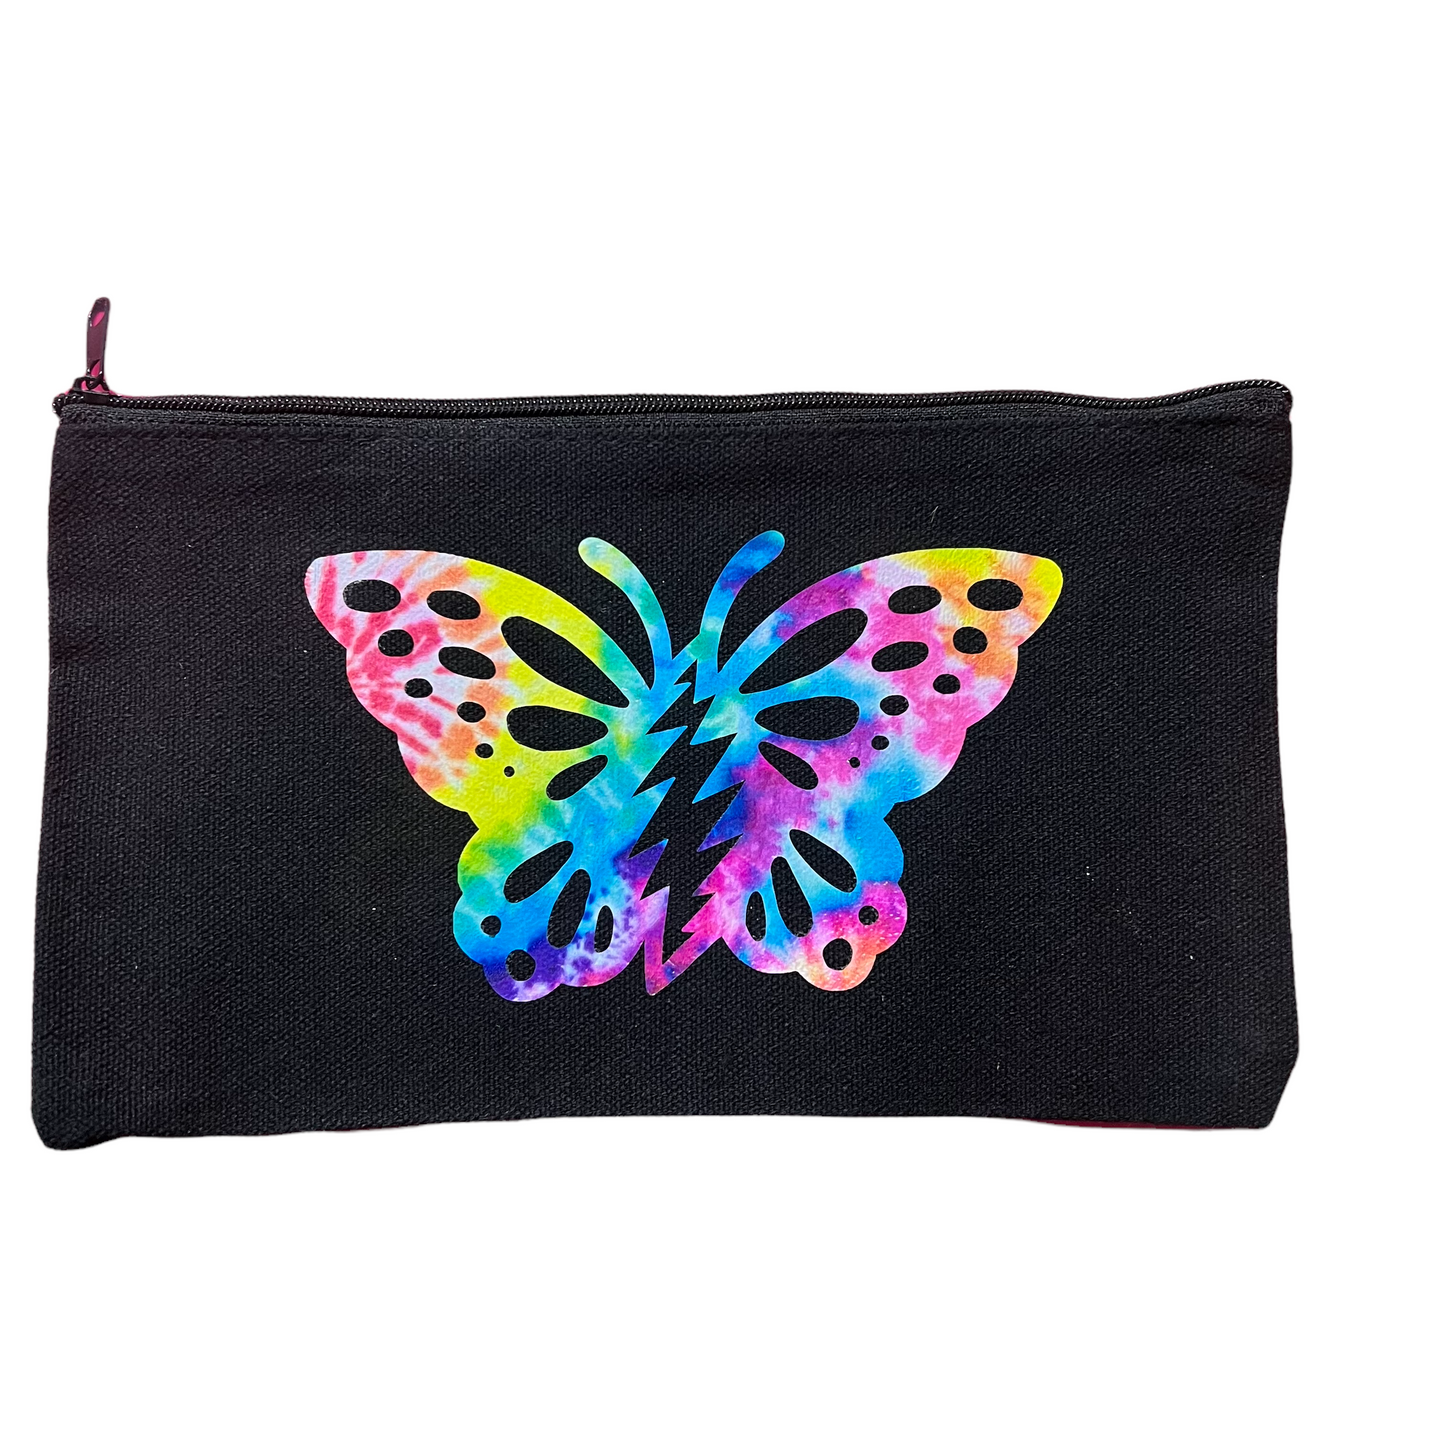 Butterfly bolt zipper pouch